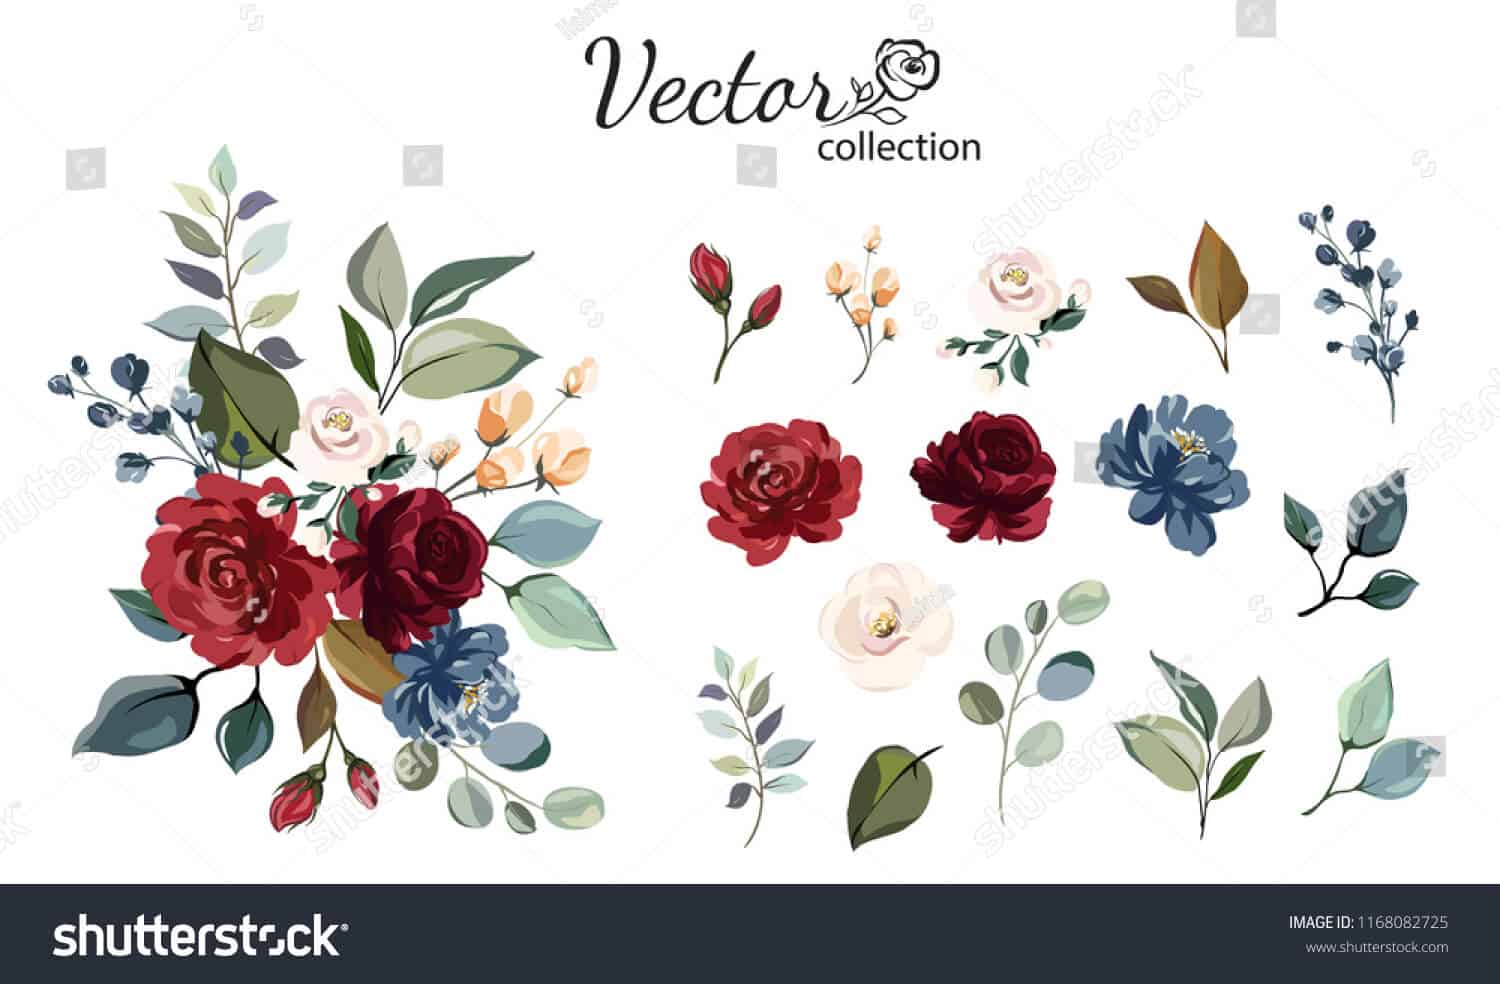 28 triệu hình ảnh hoa chất lượng cao dành cho ngày 8/3 trên Shutterstock